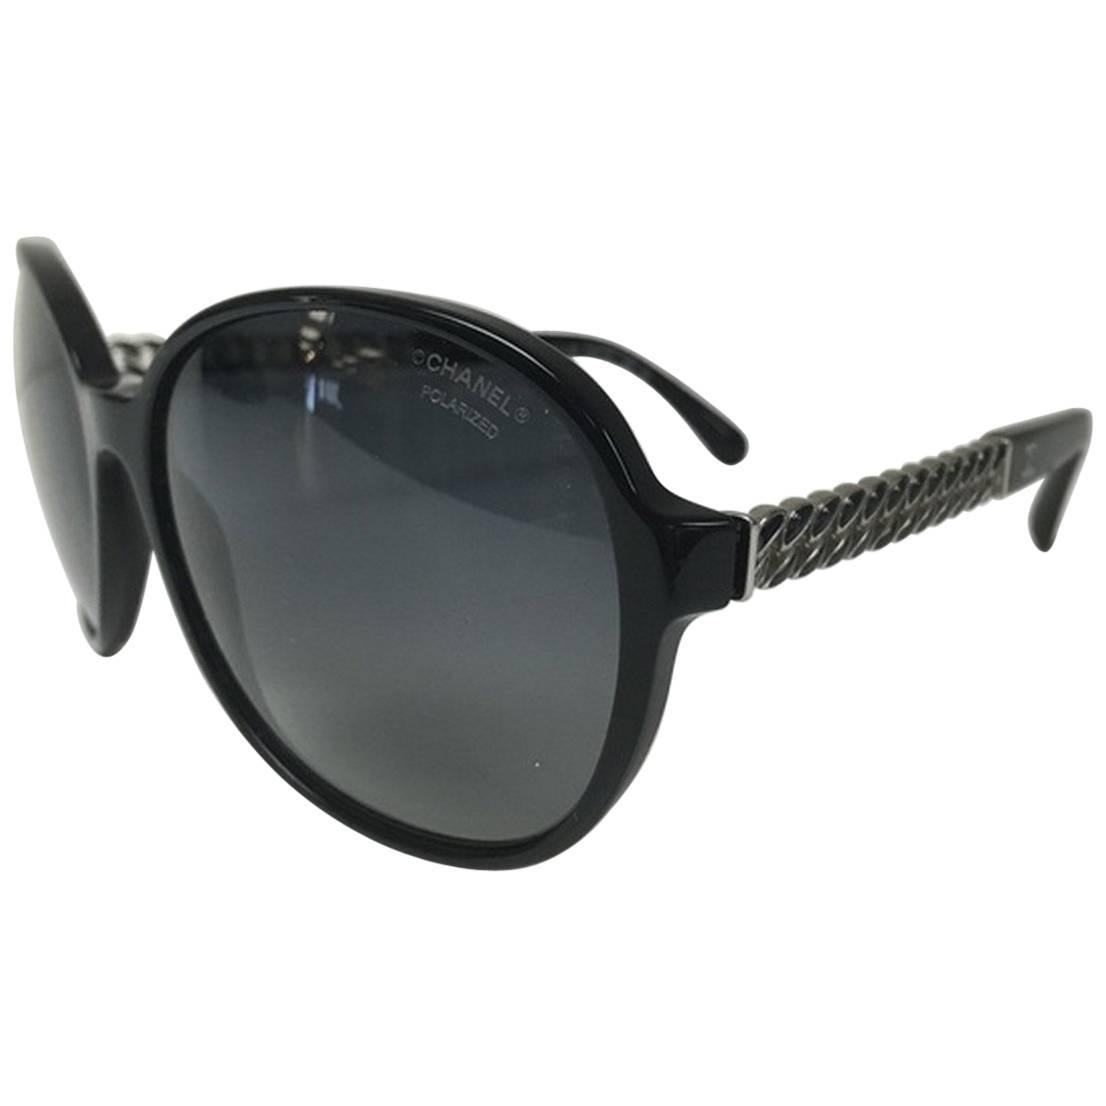 Chanel Chain Sunglasses Black